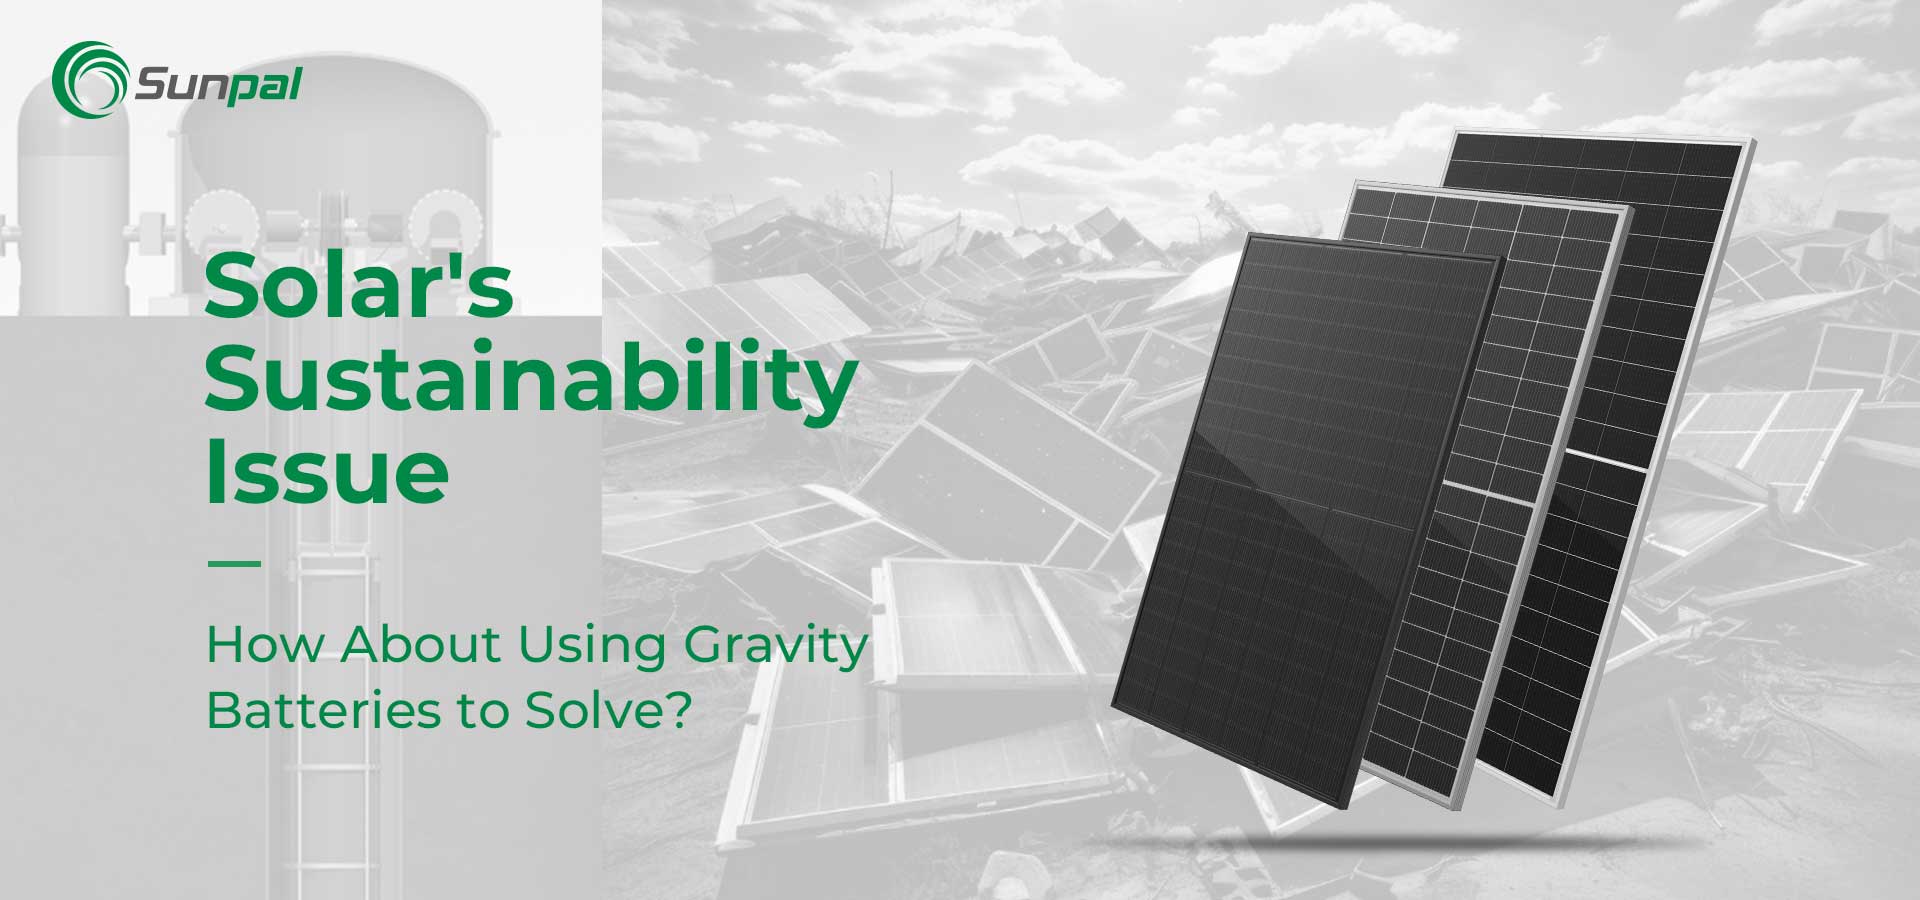 Питання сталого розвитку Solar | Використовуйте гравітаційні батареї, щоб впоратися?